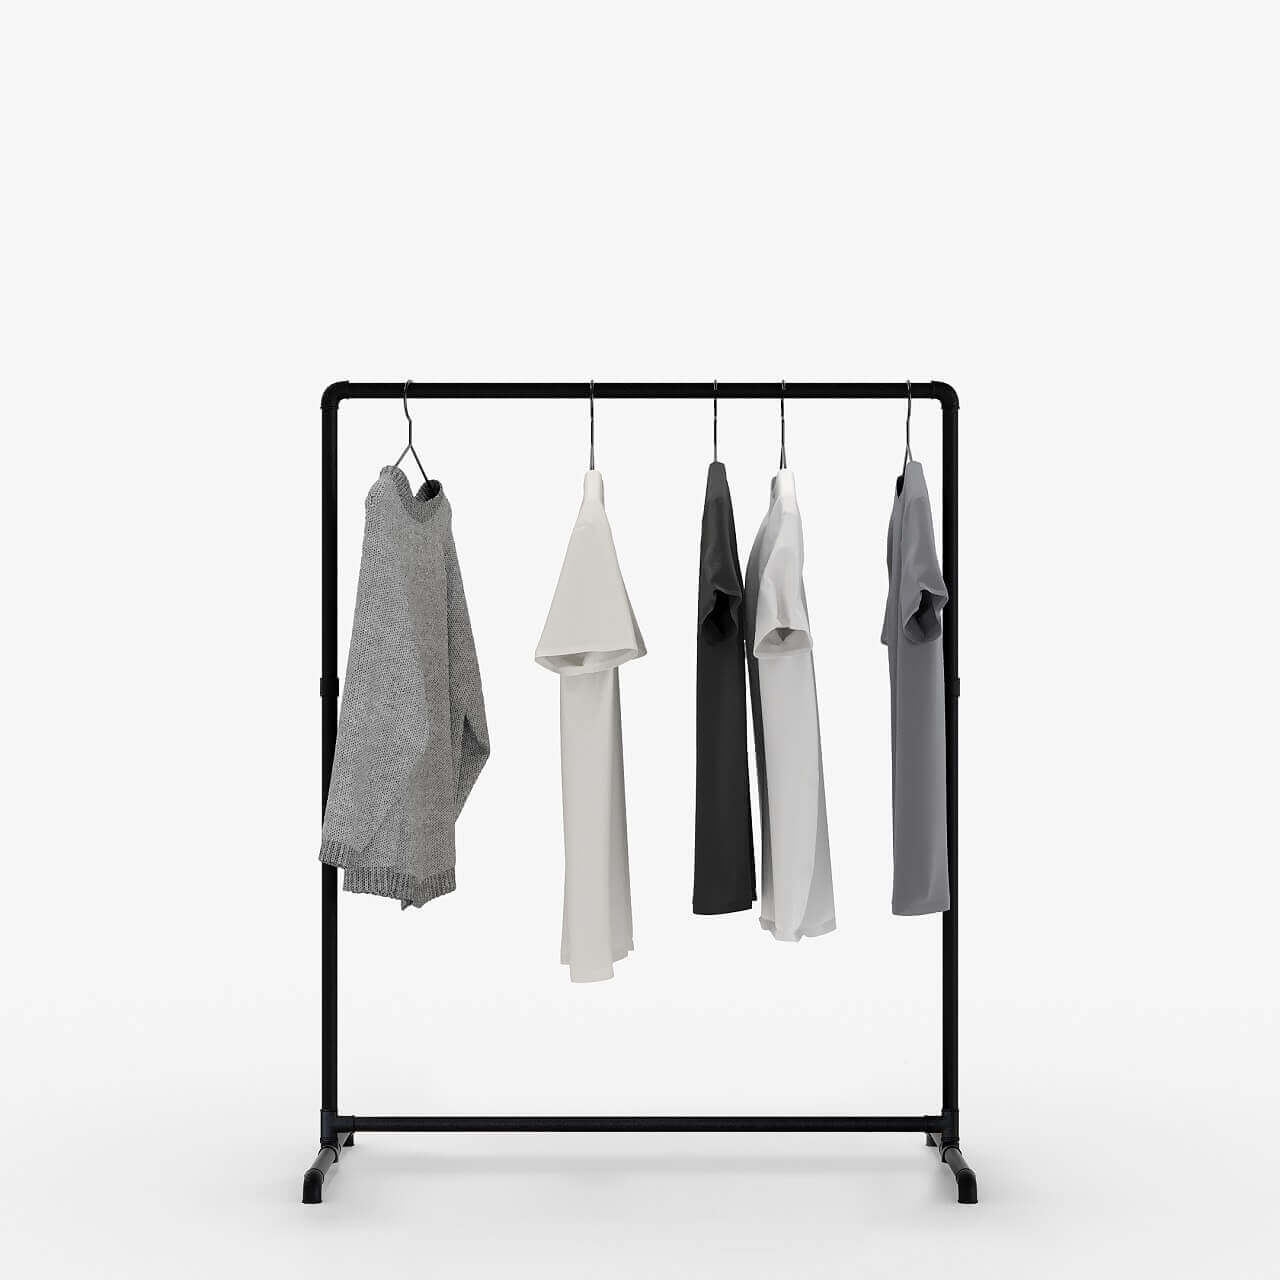 The Hanger Solution for Kids